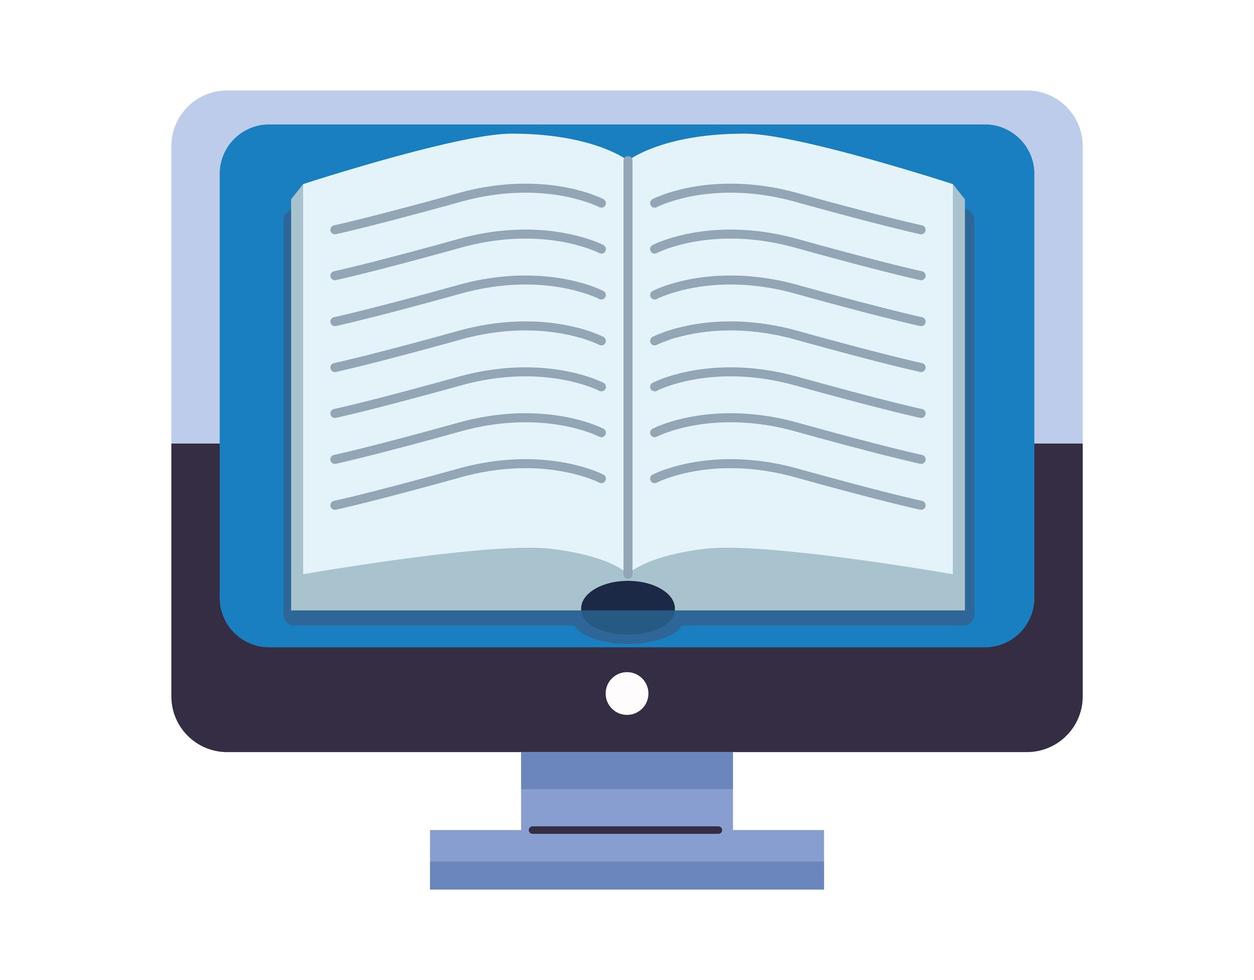 ebook open literature in desktop vector